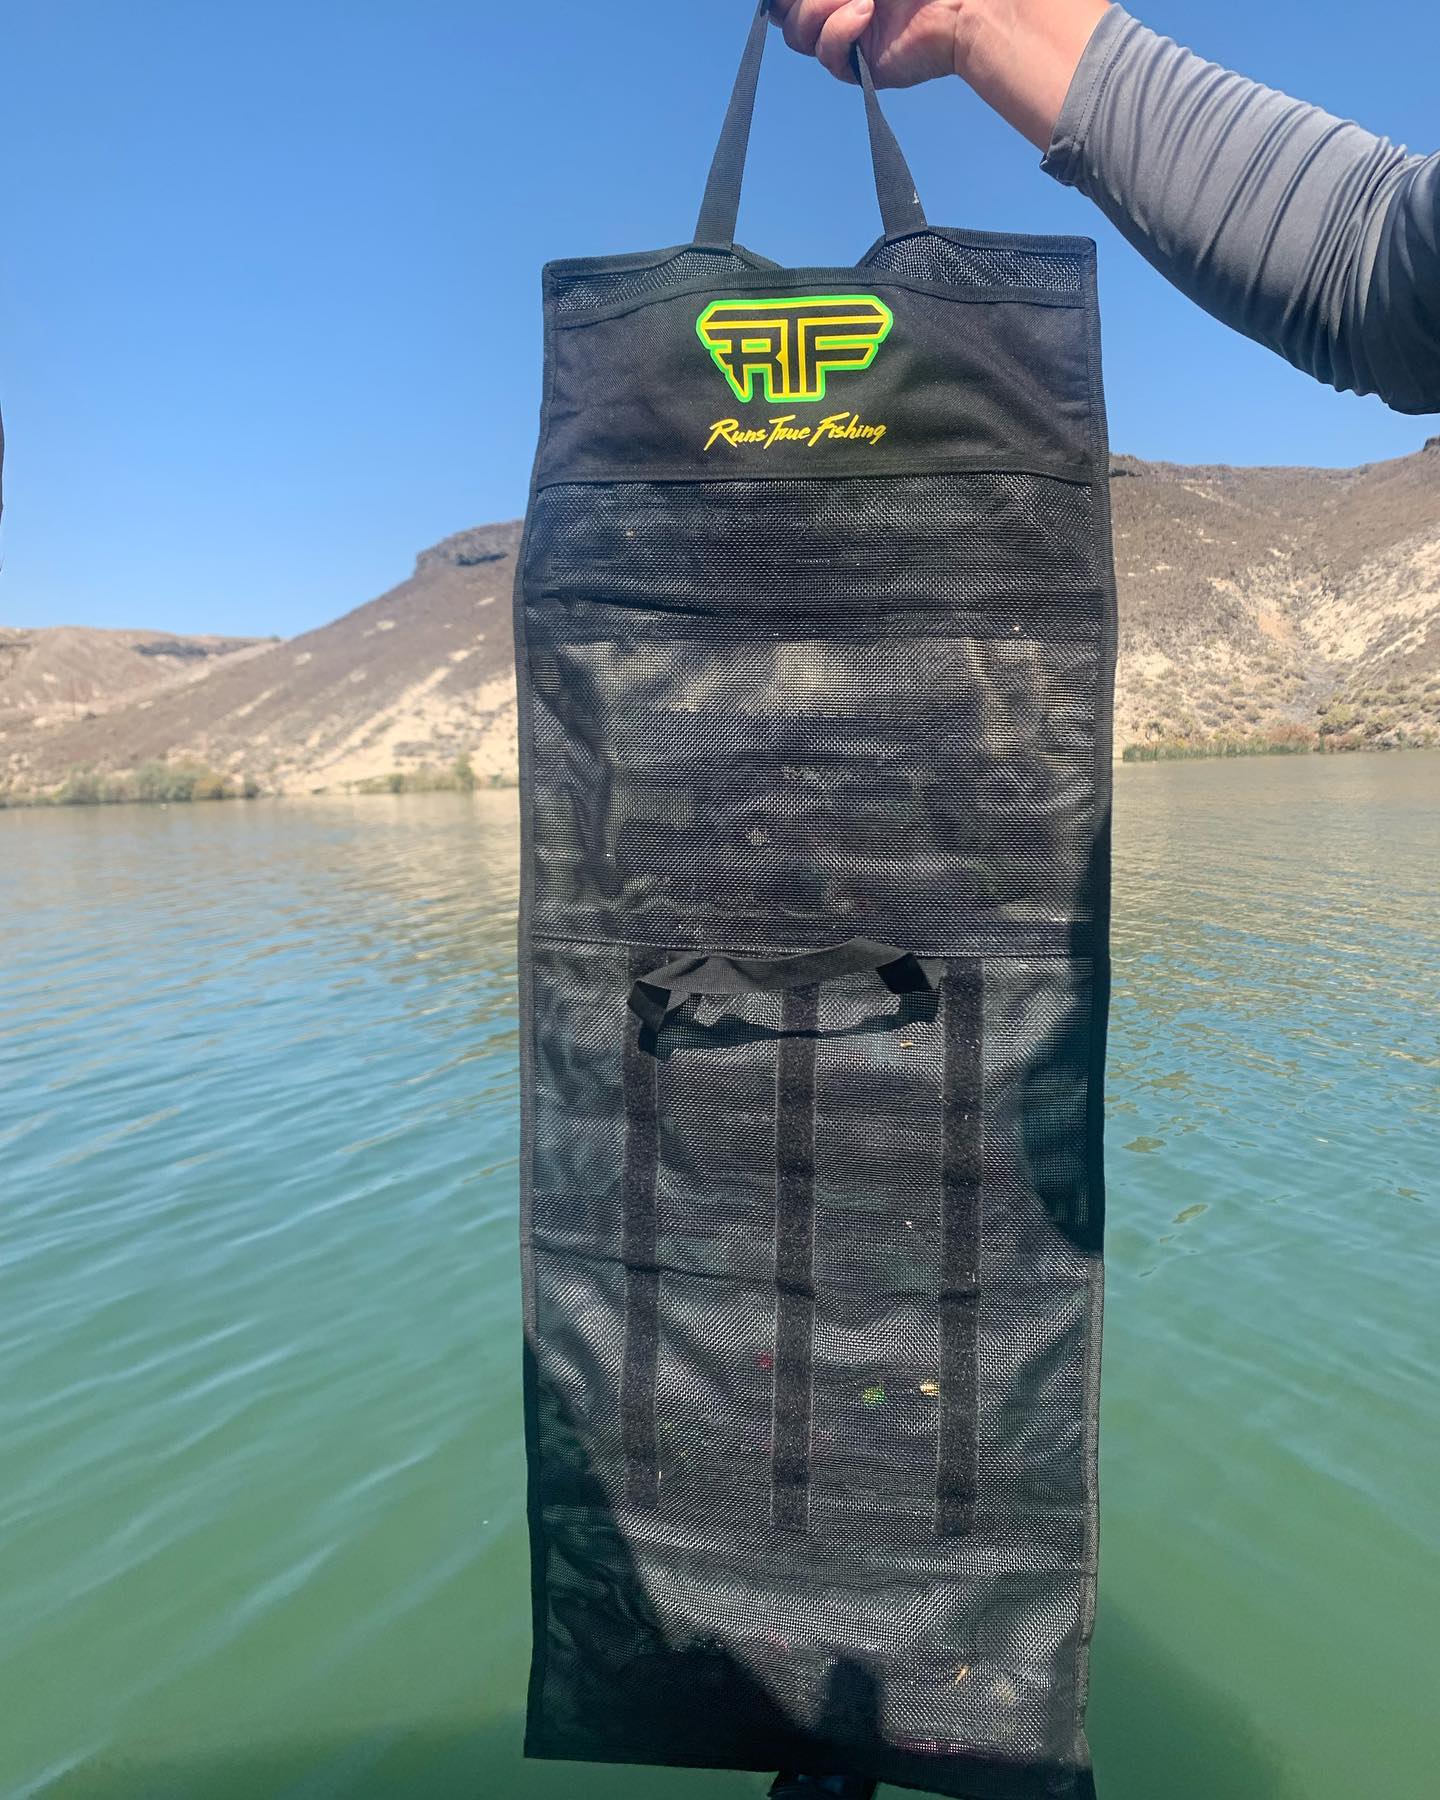 RTF Dakota Flash Bouncer & Bag Bundle – Runs True Fishing